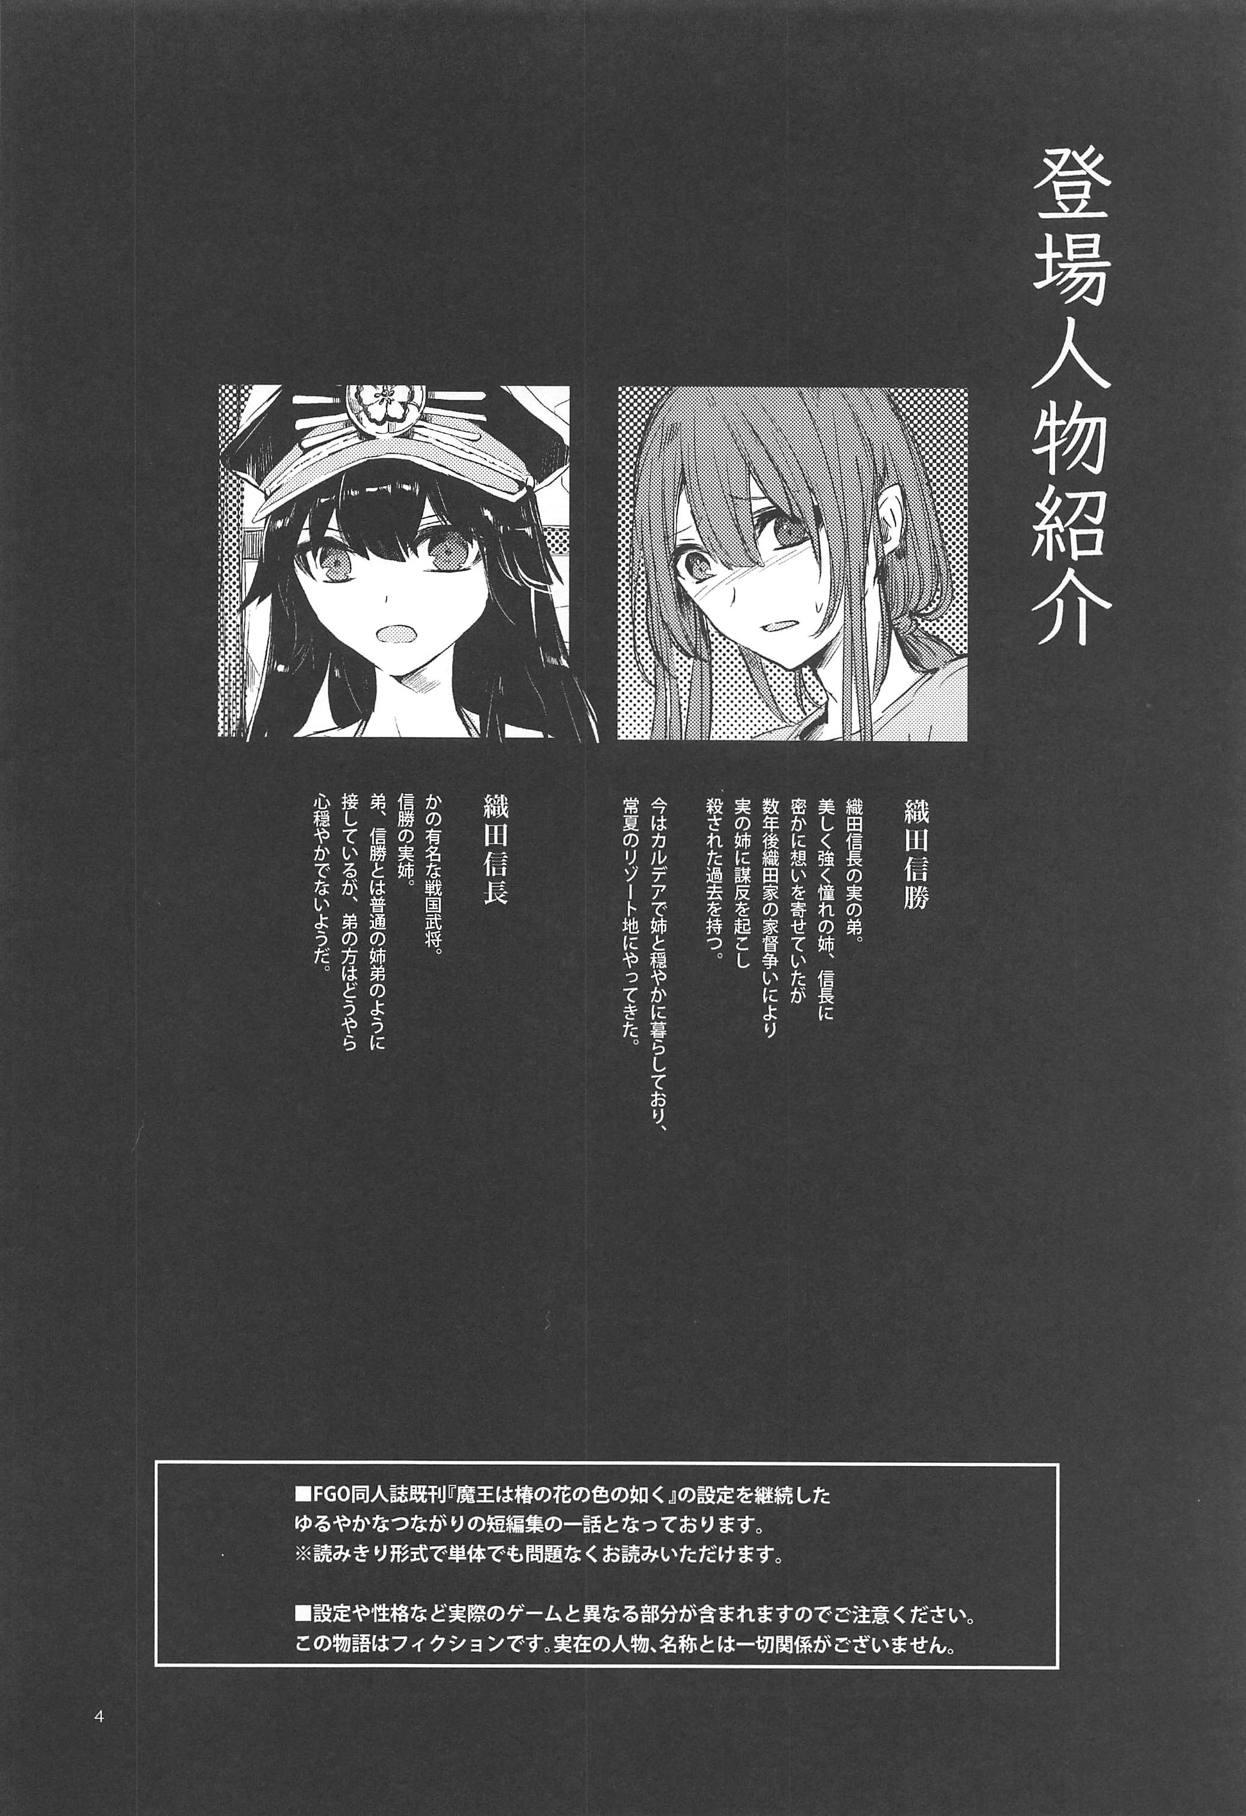  Himegoto wa Tokonatsu no Yoru ni - Fate grand order Amateur - Page 3